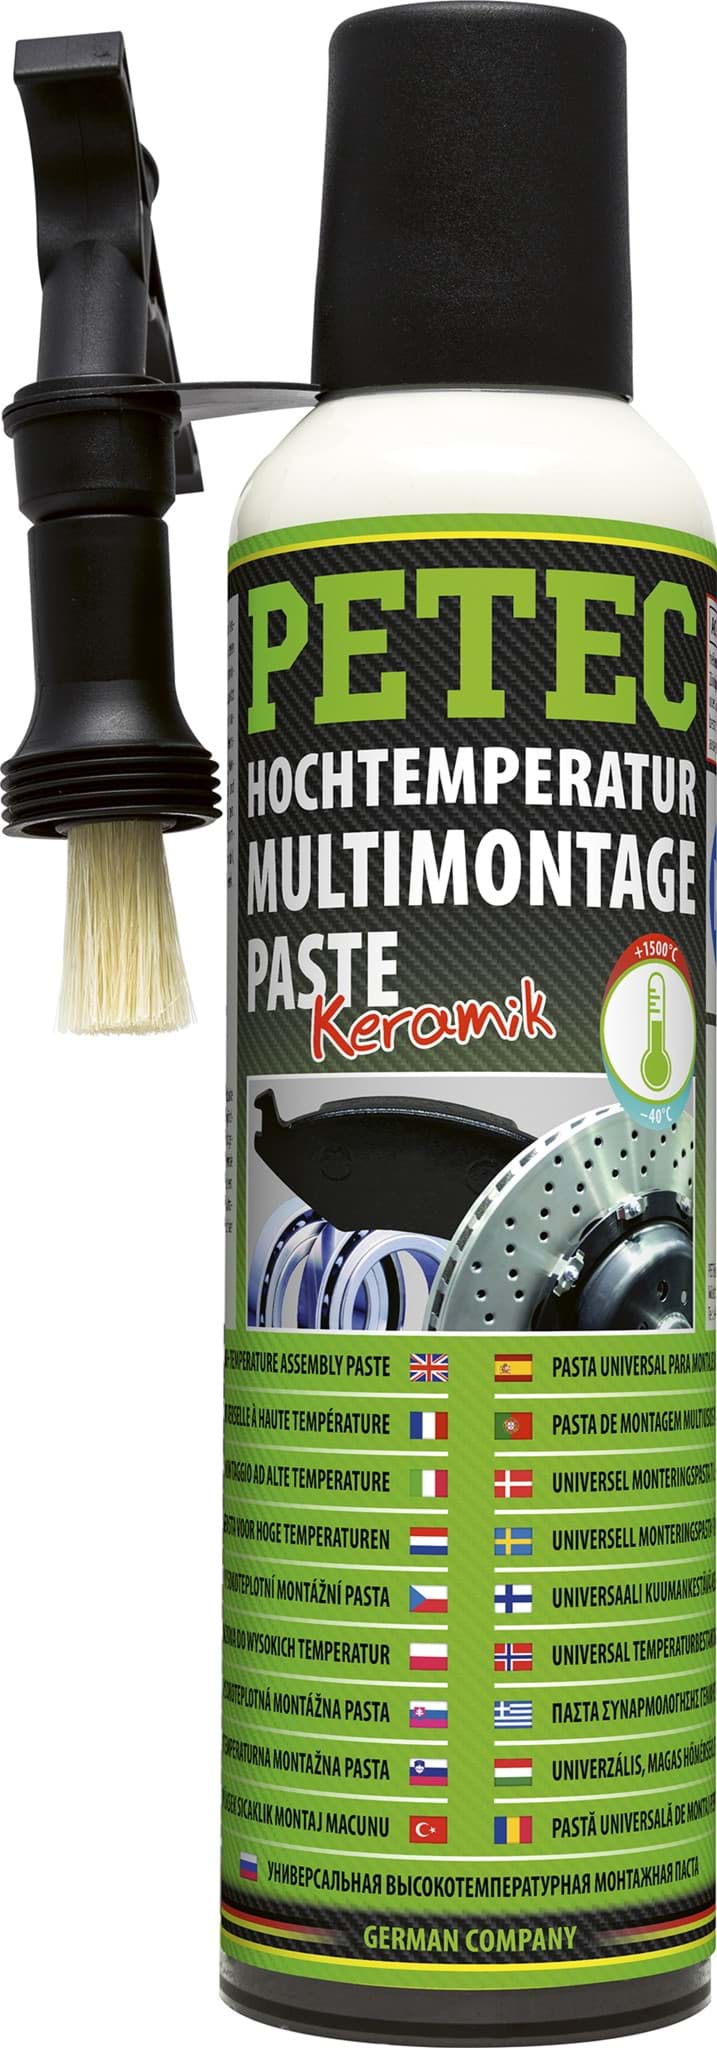 Изображение Petec Hochtemperatur Montagepaste Keramikpaste bis 1500°C